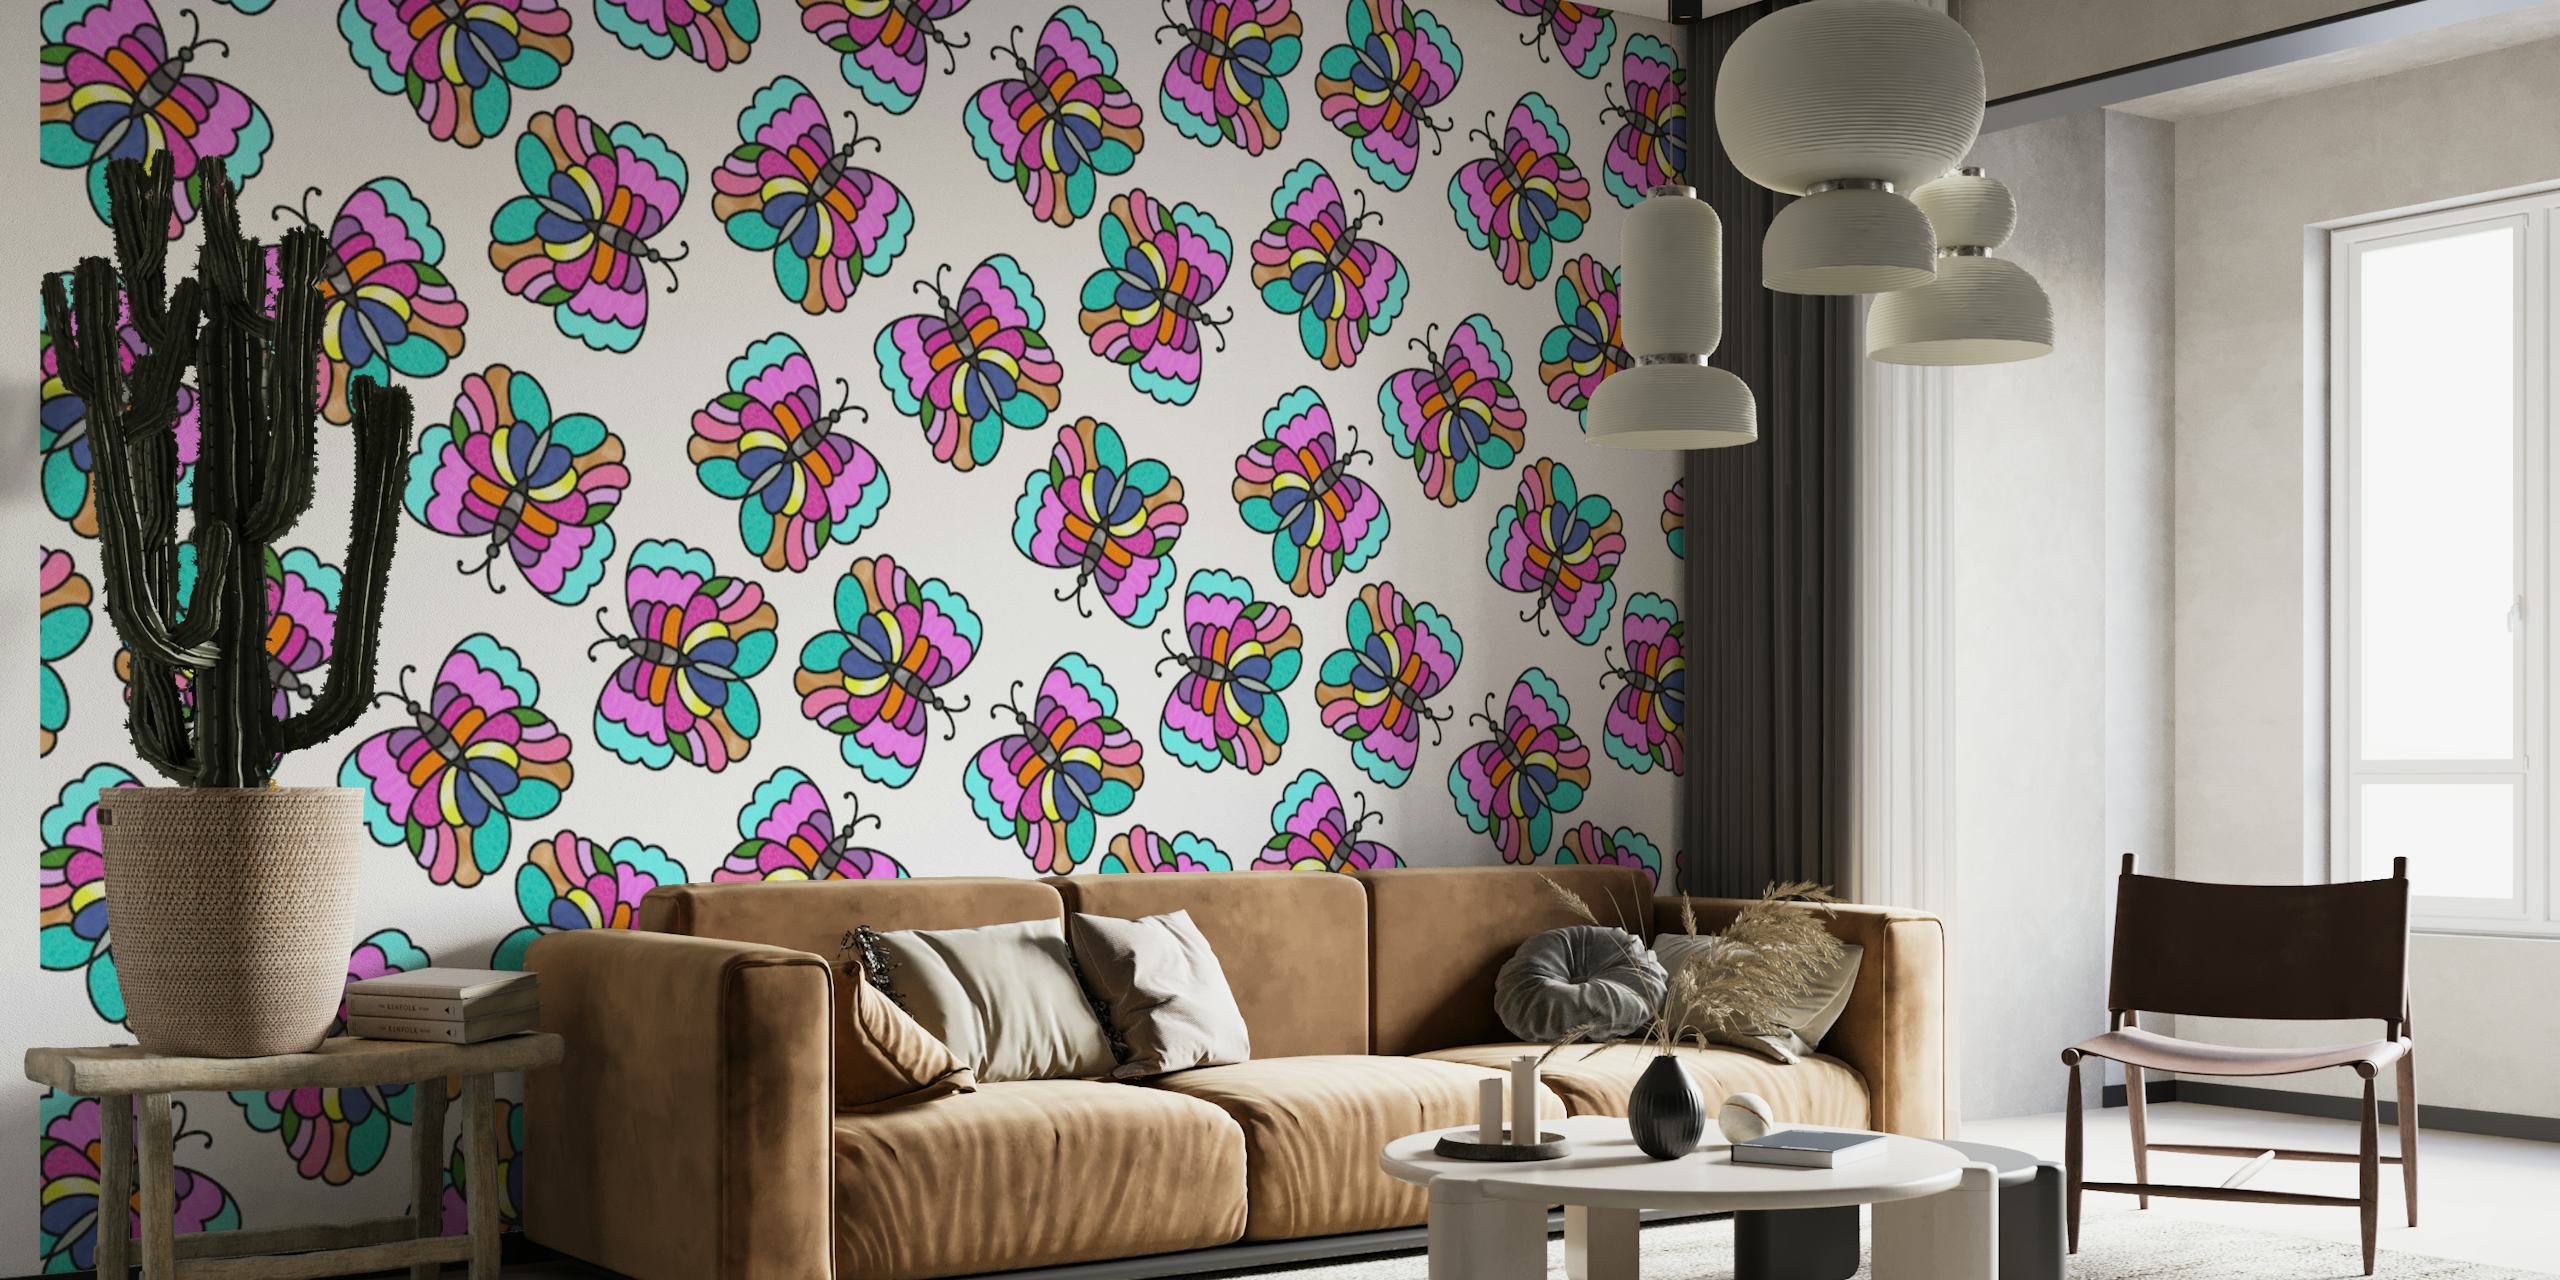 Fotomural vinílico de parede com padrão de borboletas estilo vitral colorido